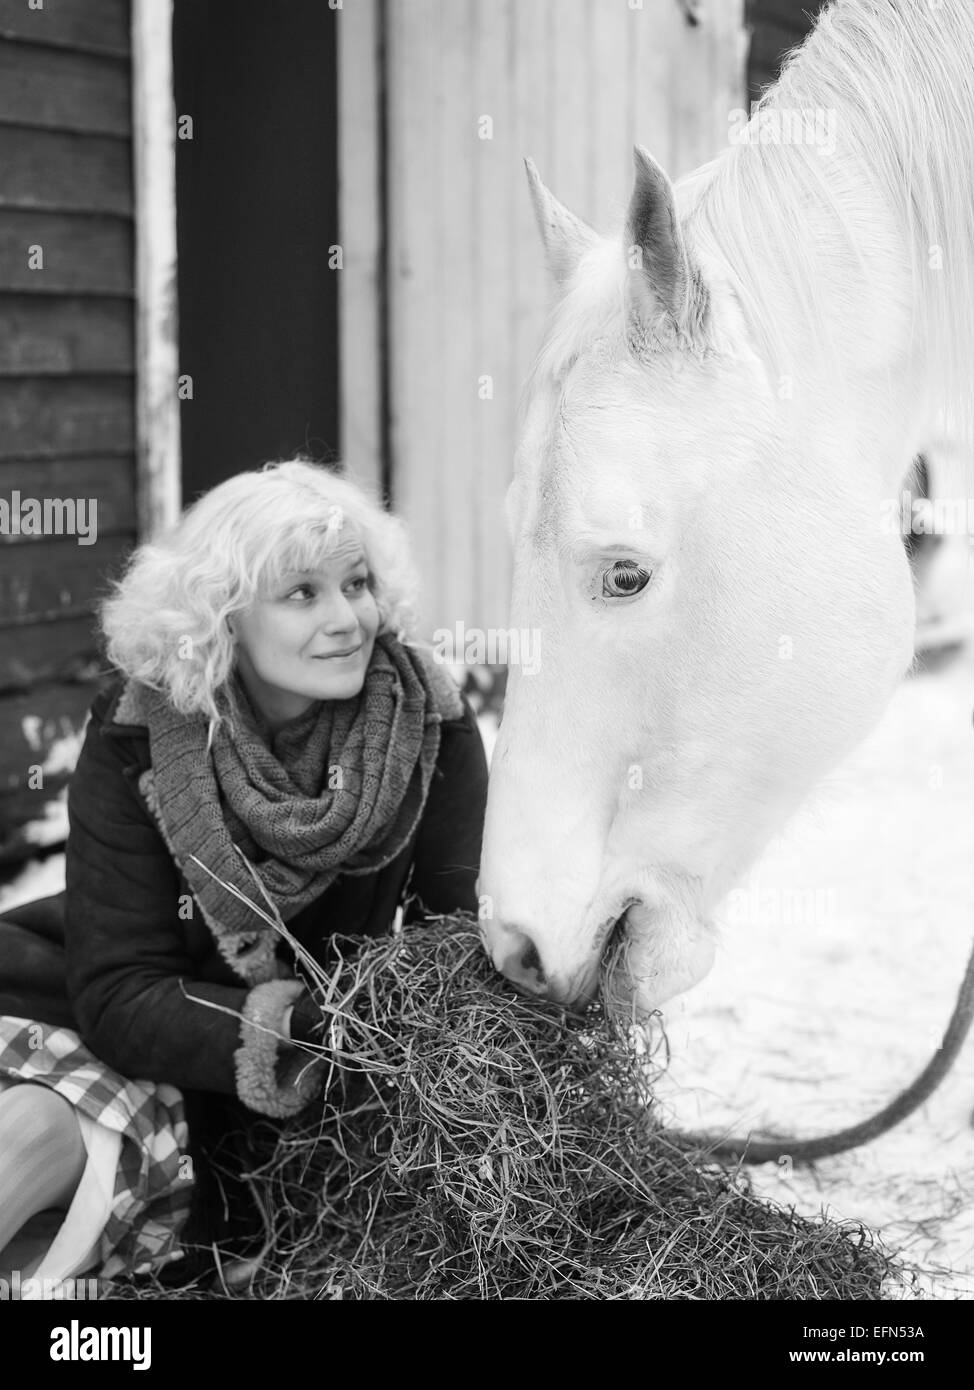 Attractive blonde femme nourrit un cheval blanc, ciel couvert journée d'hiver, image en noir et blanc, l'accent sur les yeux du cheval Banque D'Images